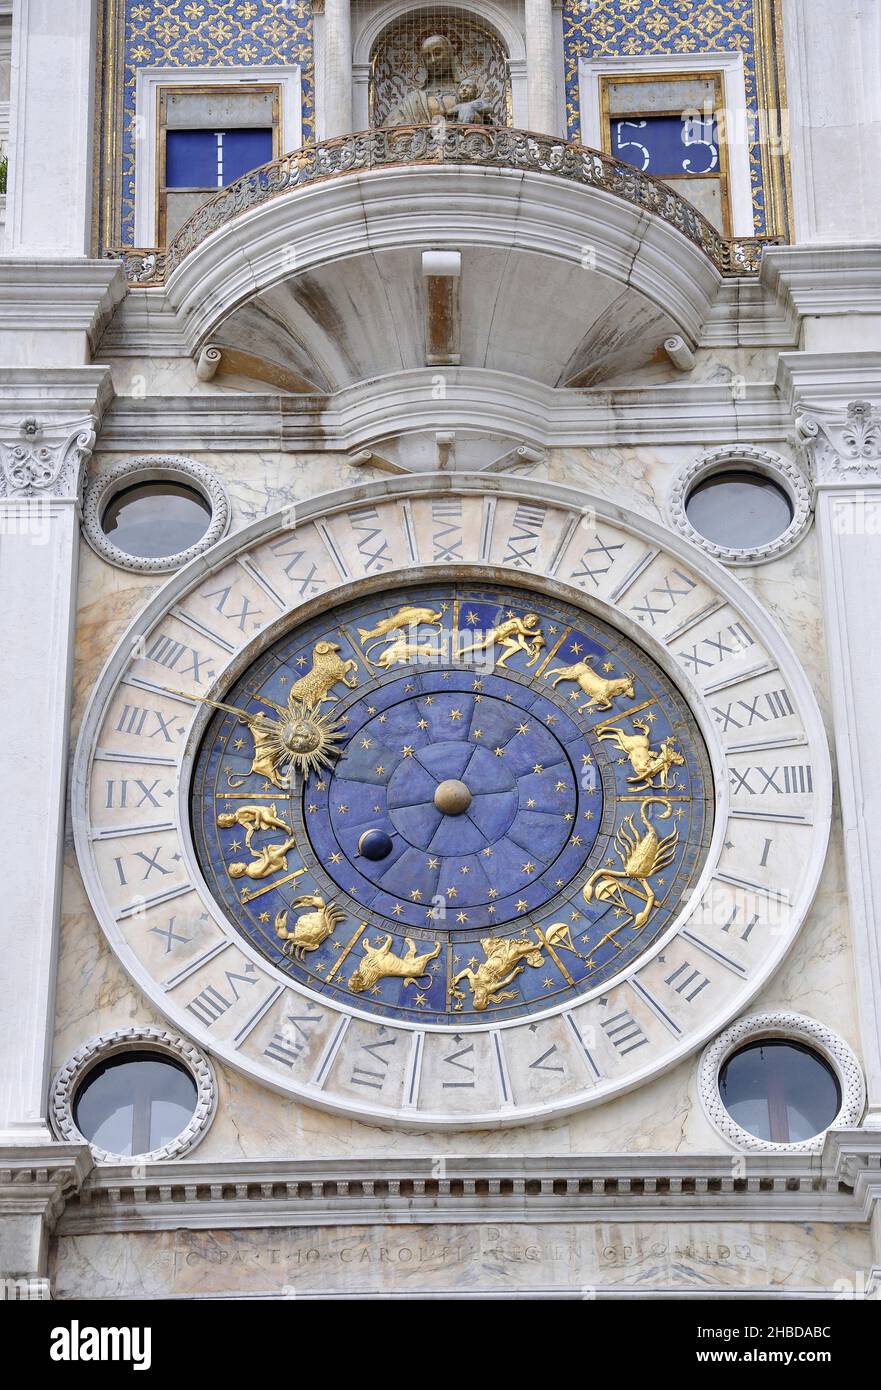 Tour du Clocktower de St Marc, place St Marc, Venise (Venise), région de Vénétie, Italie Banque D'Images